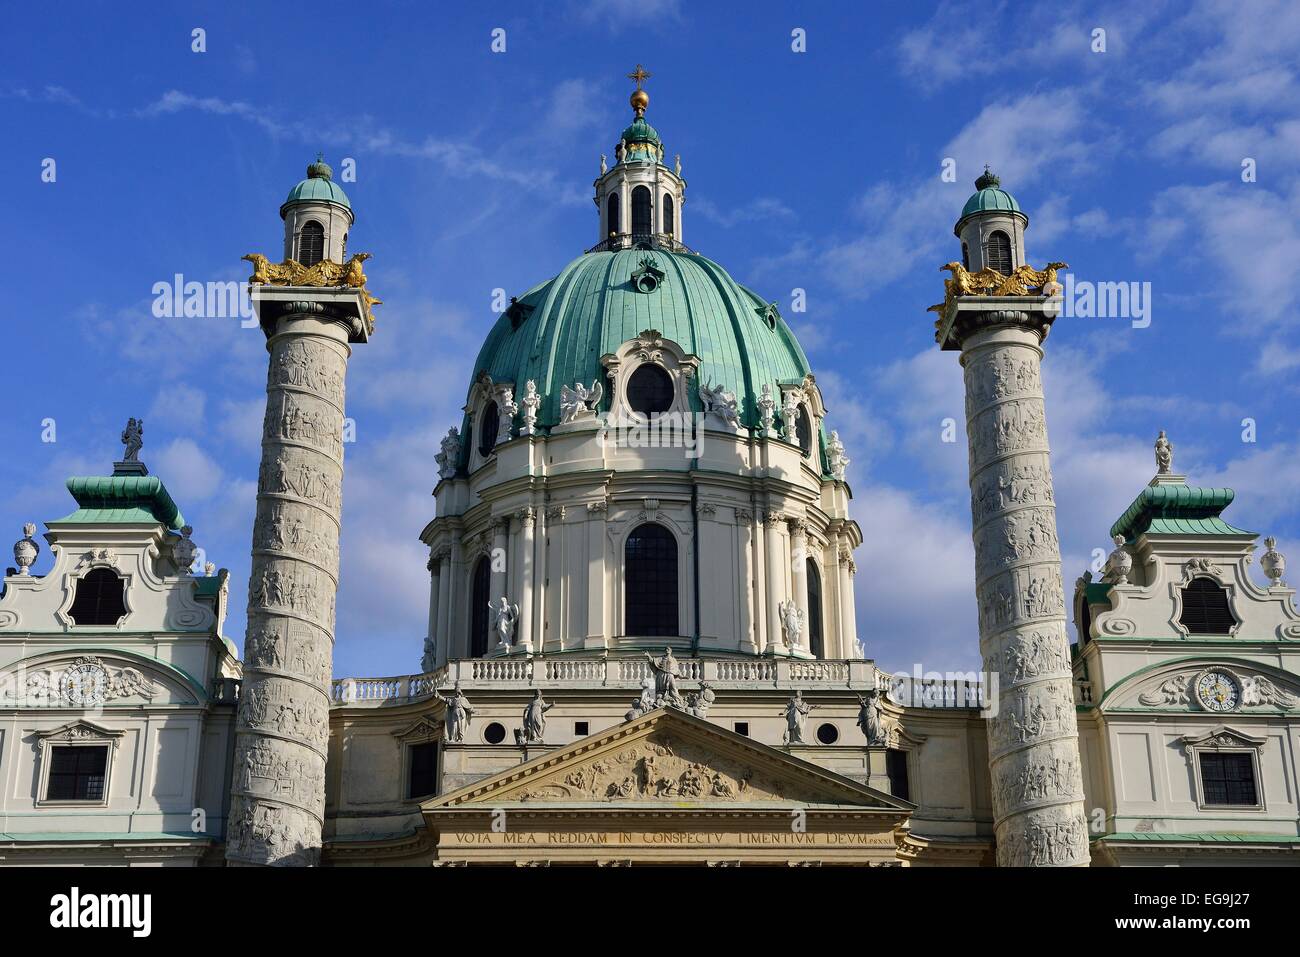 Église Karlskirche baroque conçu par Johann Bernhard Fischer von Erlach, la place Karlsplatz, Vienne, Autriche Banque D'Images